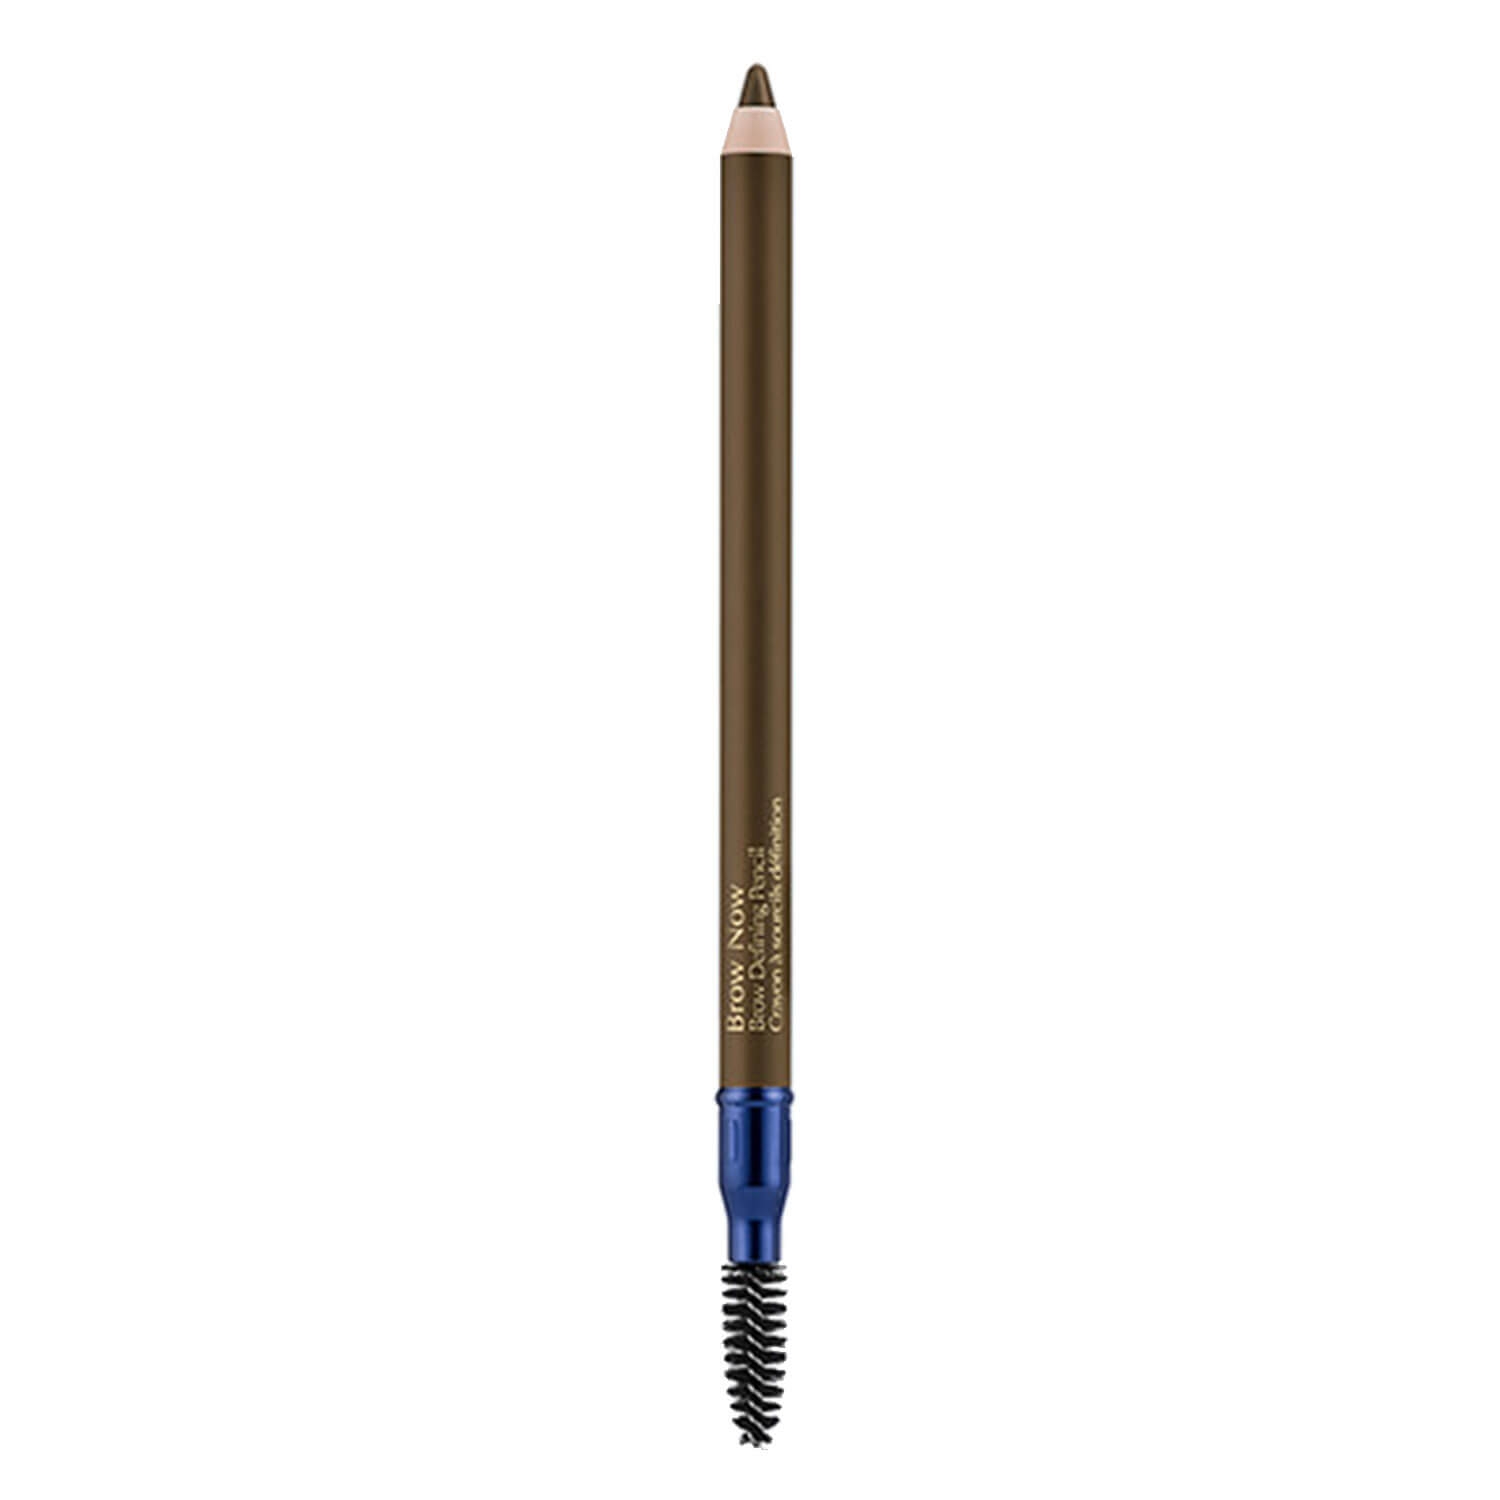 Produktbild von Brow Now - Brow Defining Pencil 04 Dark Brunette